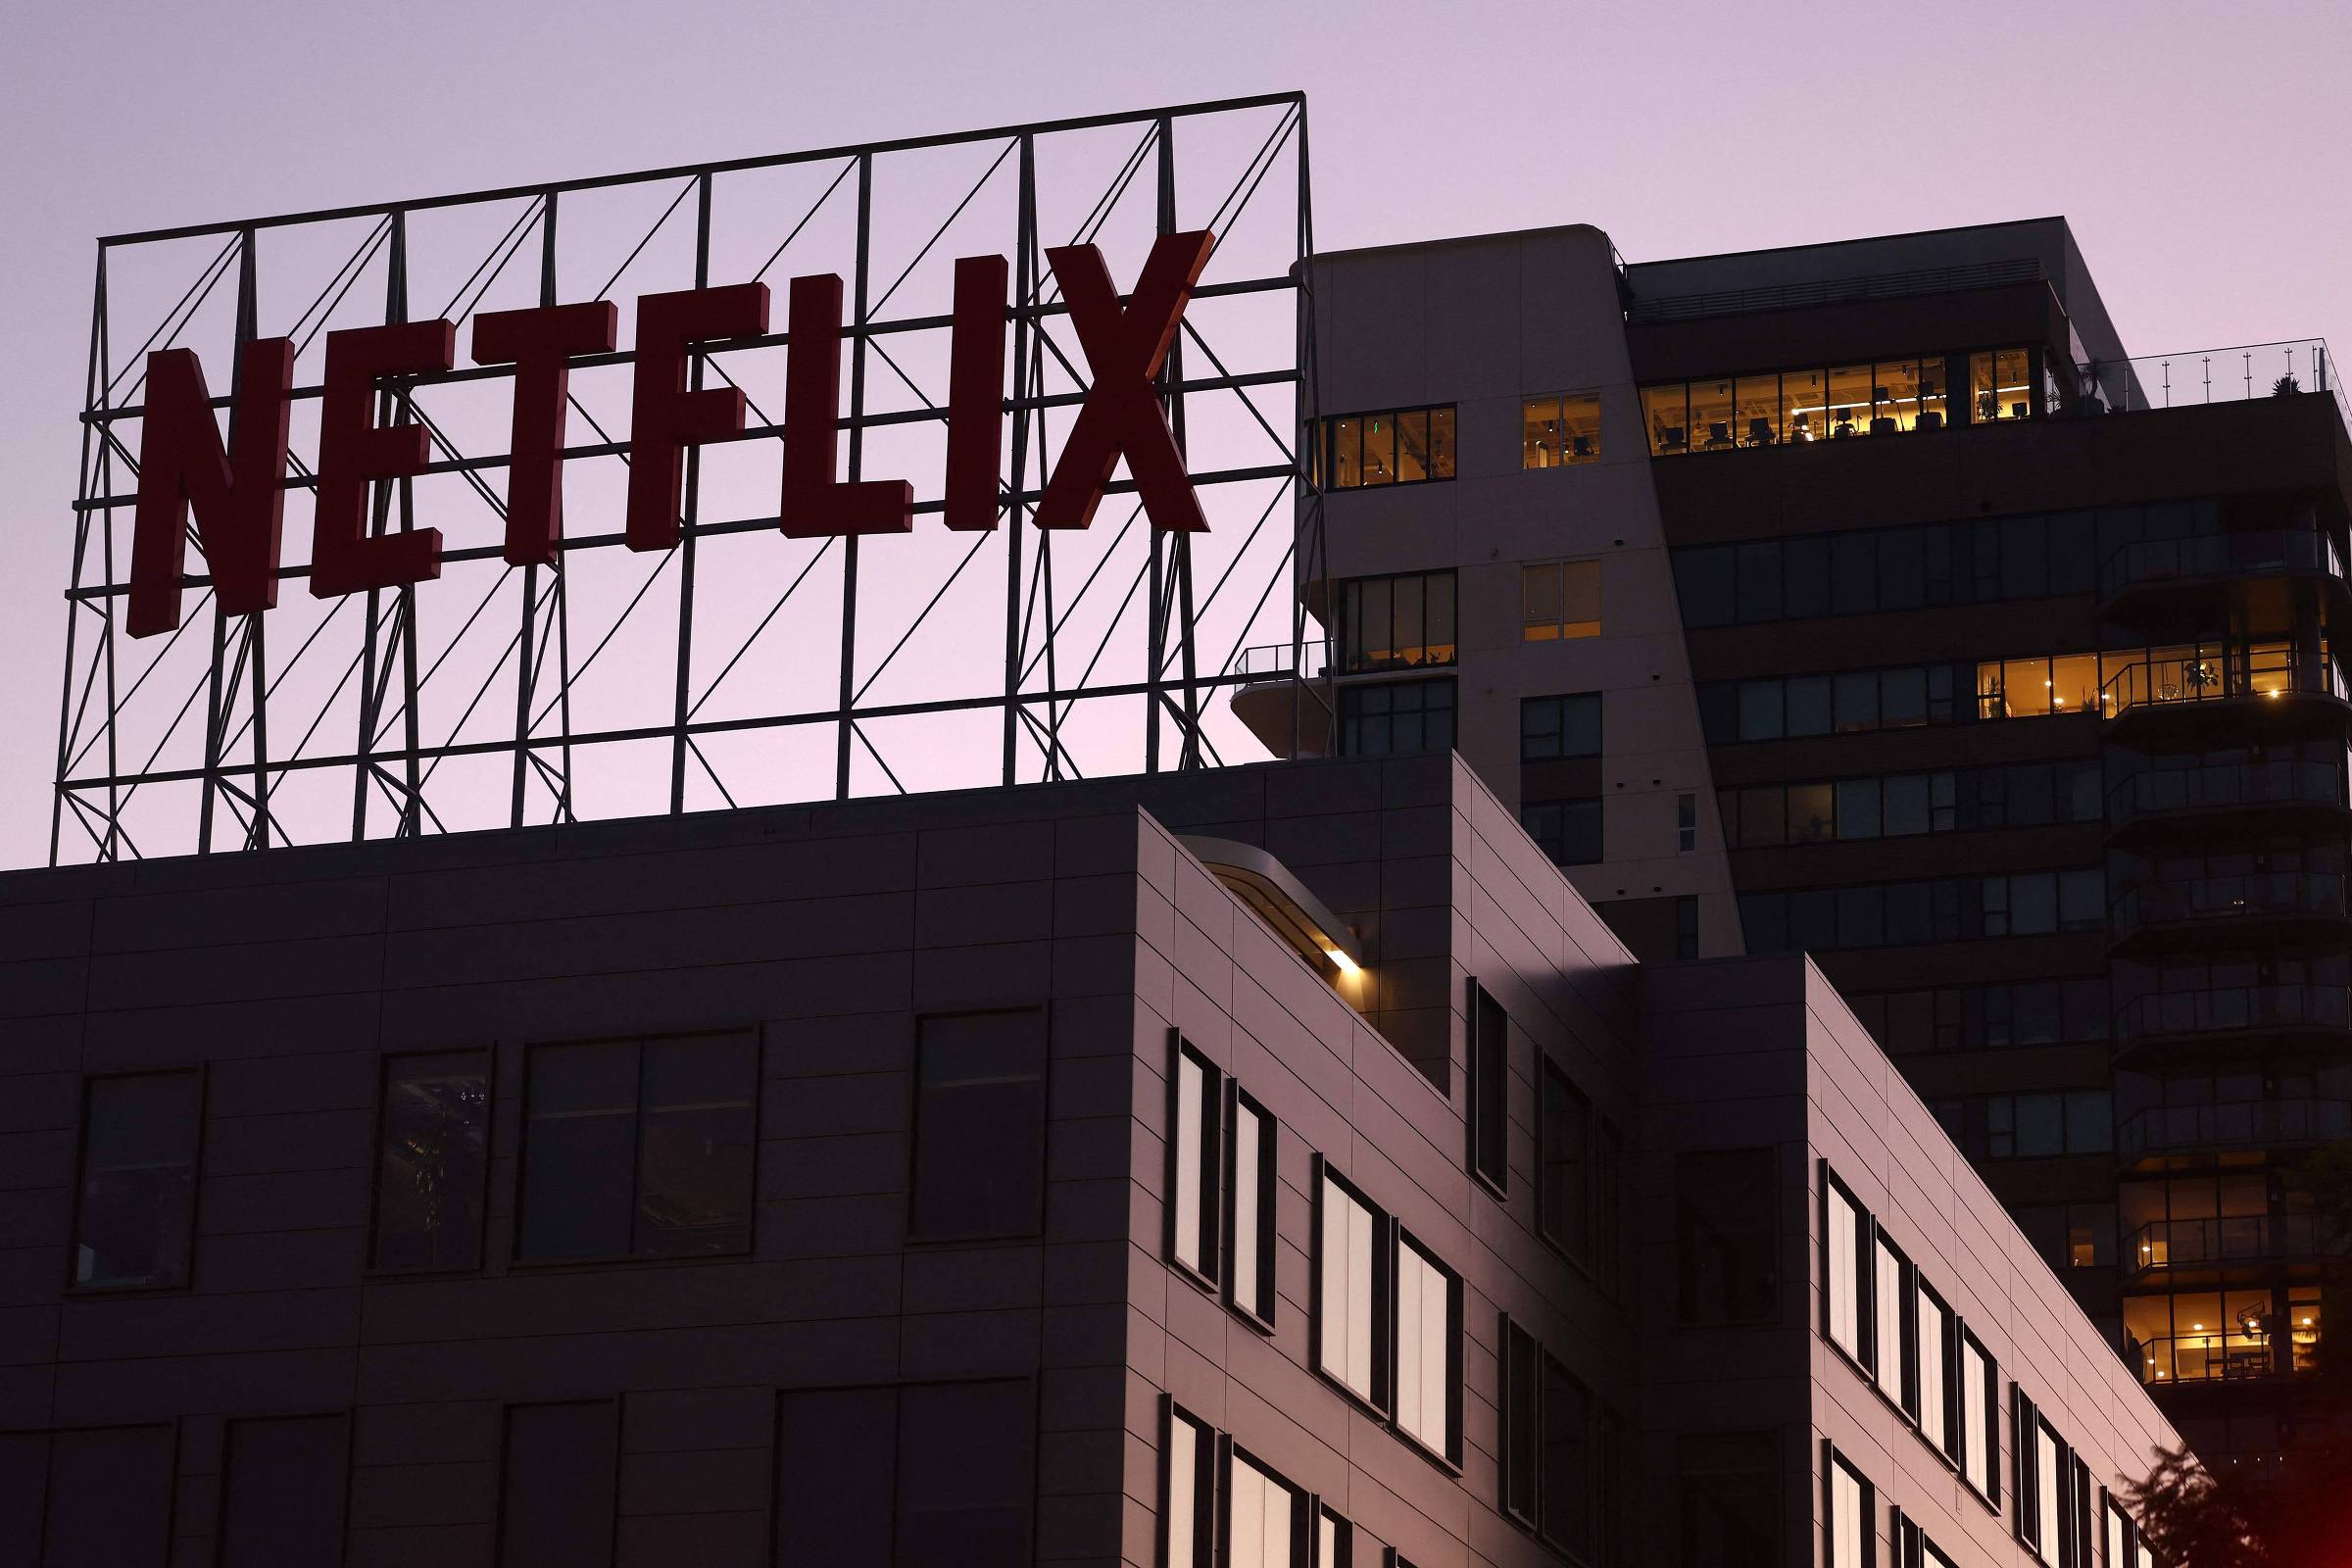 Plano mais barato da Netflix começa a ser liberado hoje